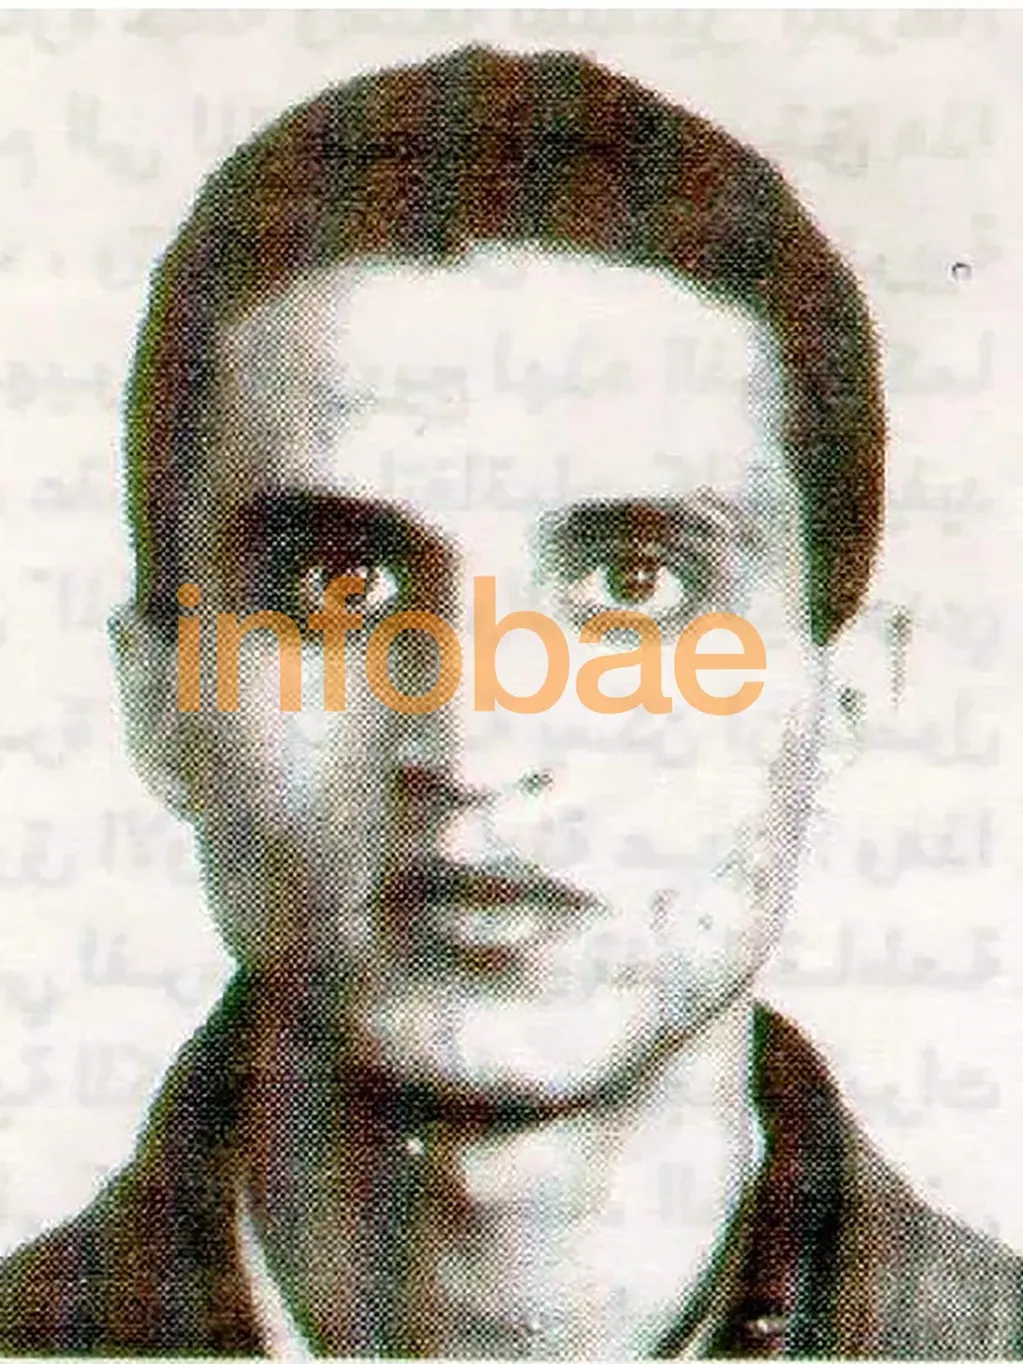 Muhammad Nur Al-Din Nuer Al-Din, el conductor suicida que voló la Embajada de Israel. (Infobae)